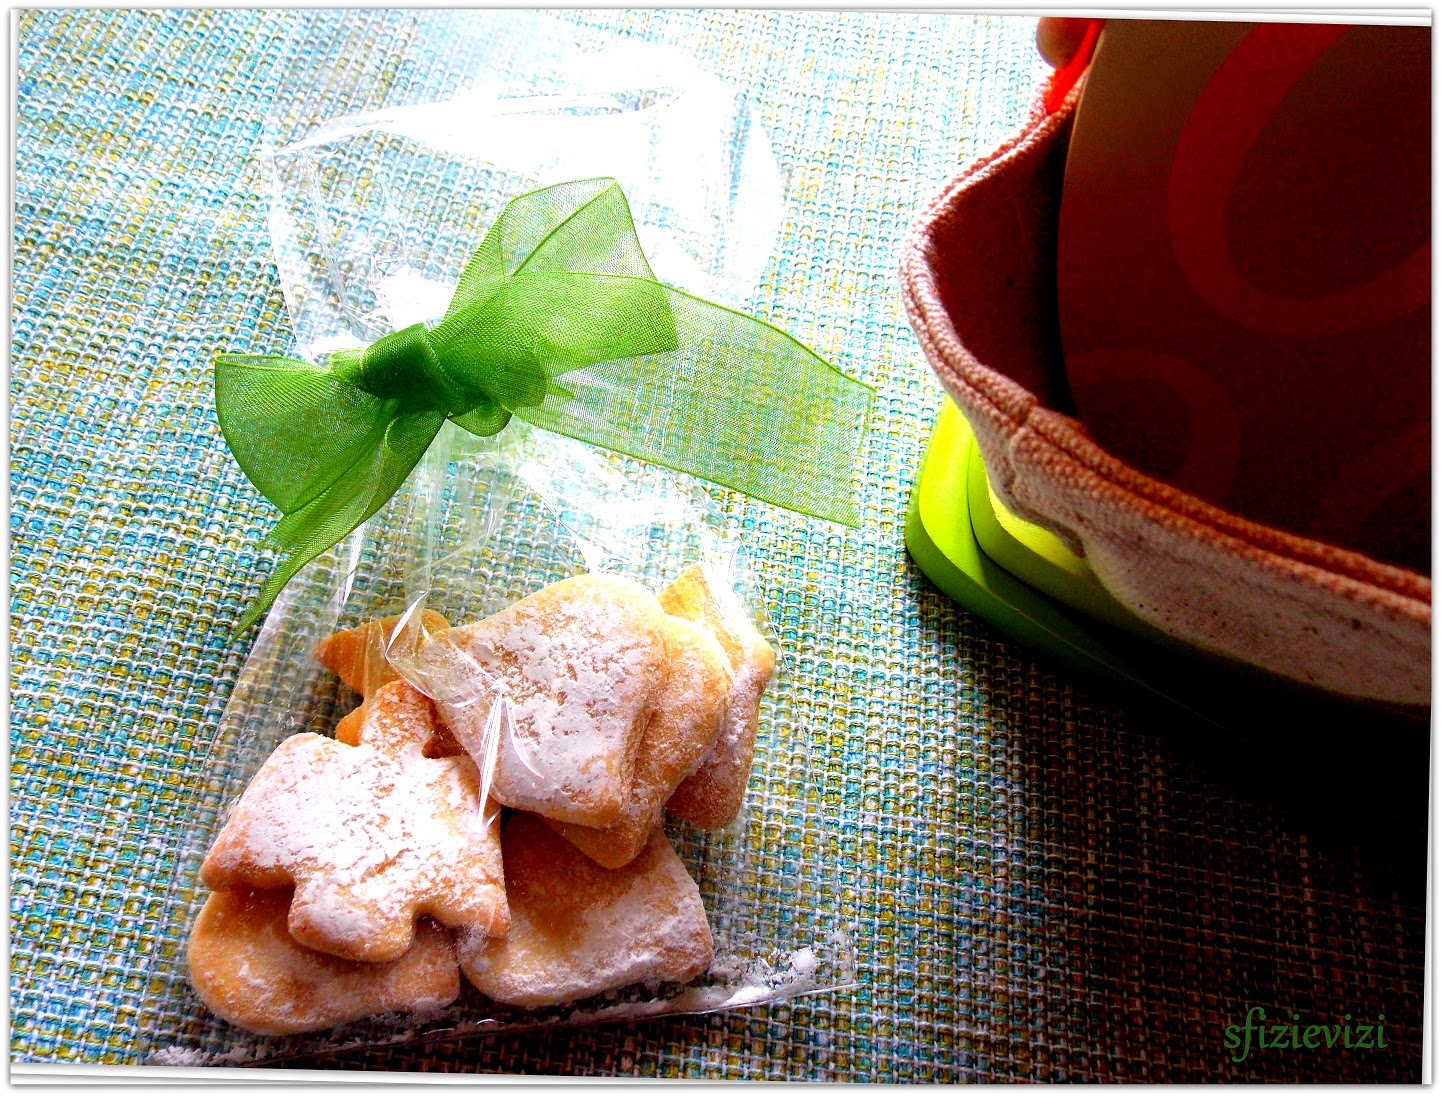 biscotti friabilissimi (ricetta con amido e senza latticini) a tema pasquale  e un'idea  per pasqua 